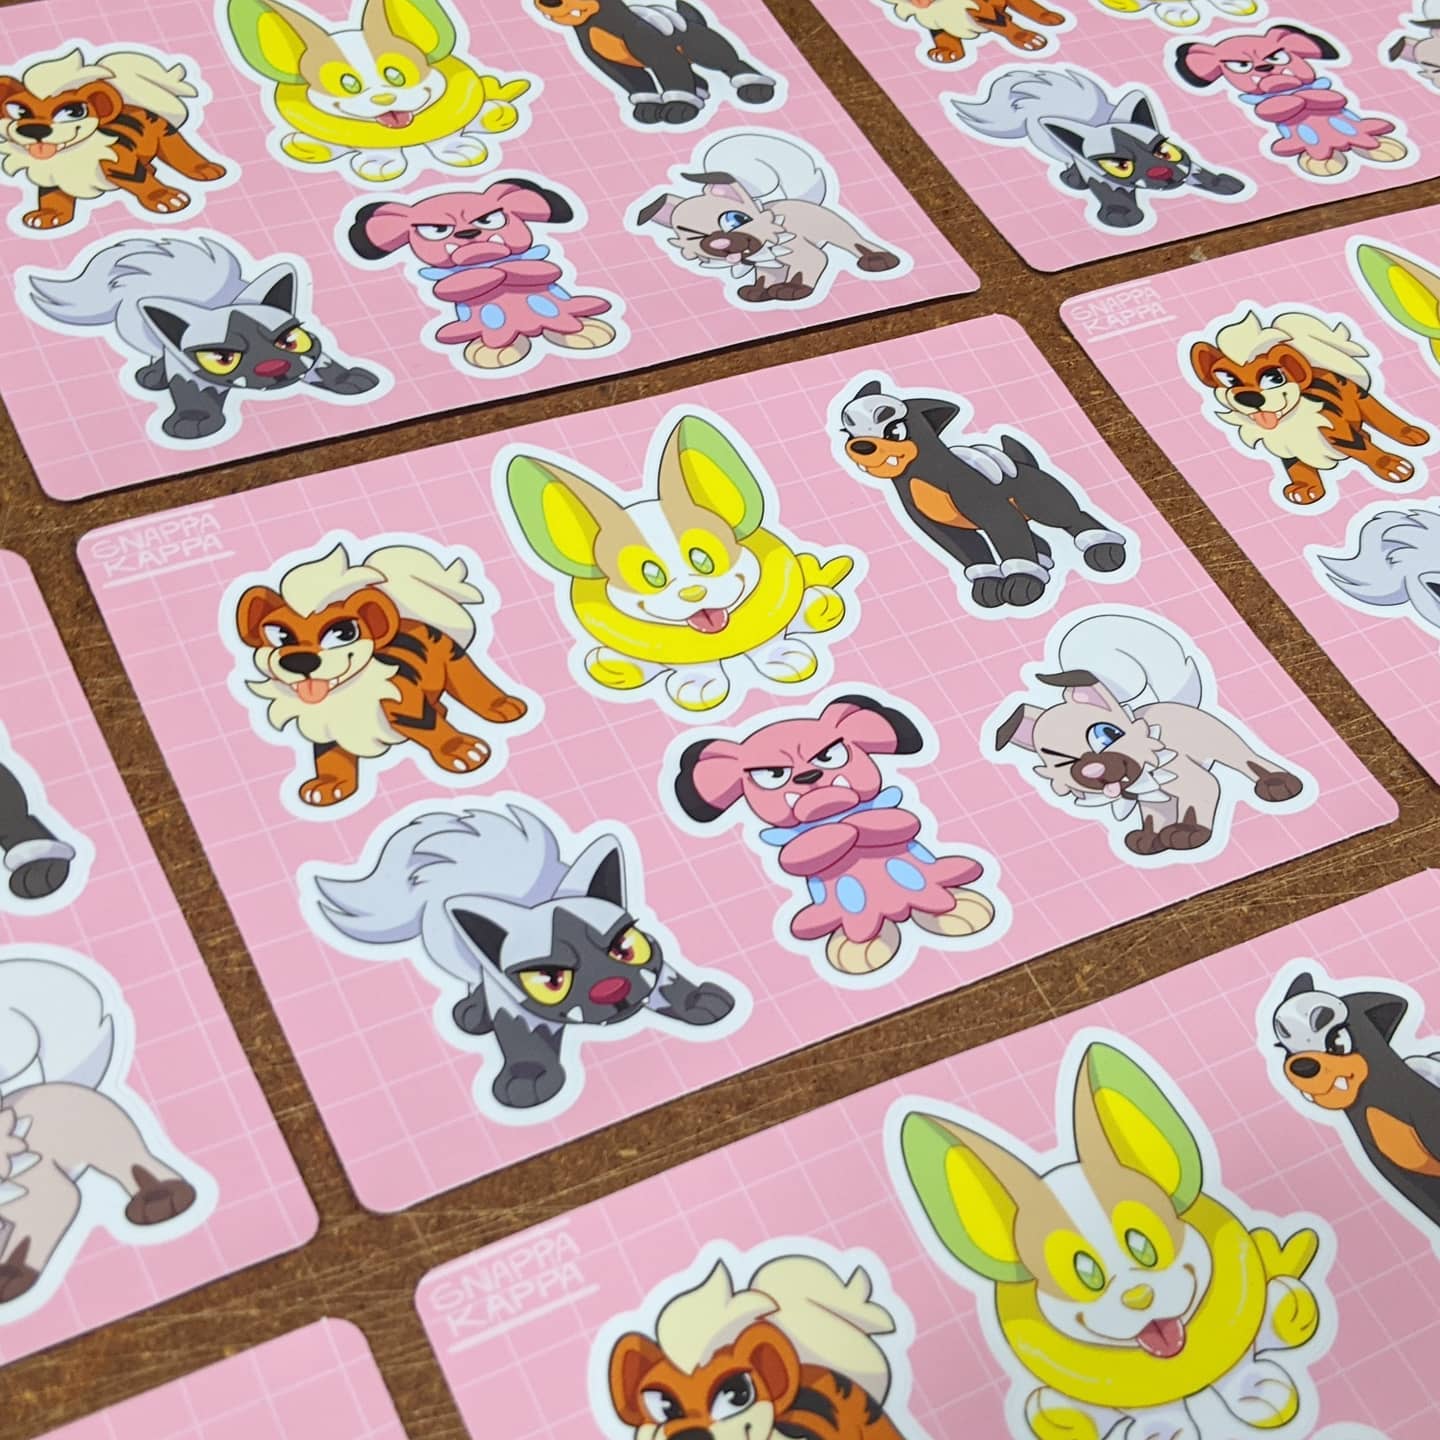 Custom Sticker Sheets